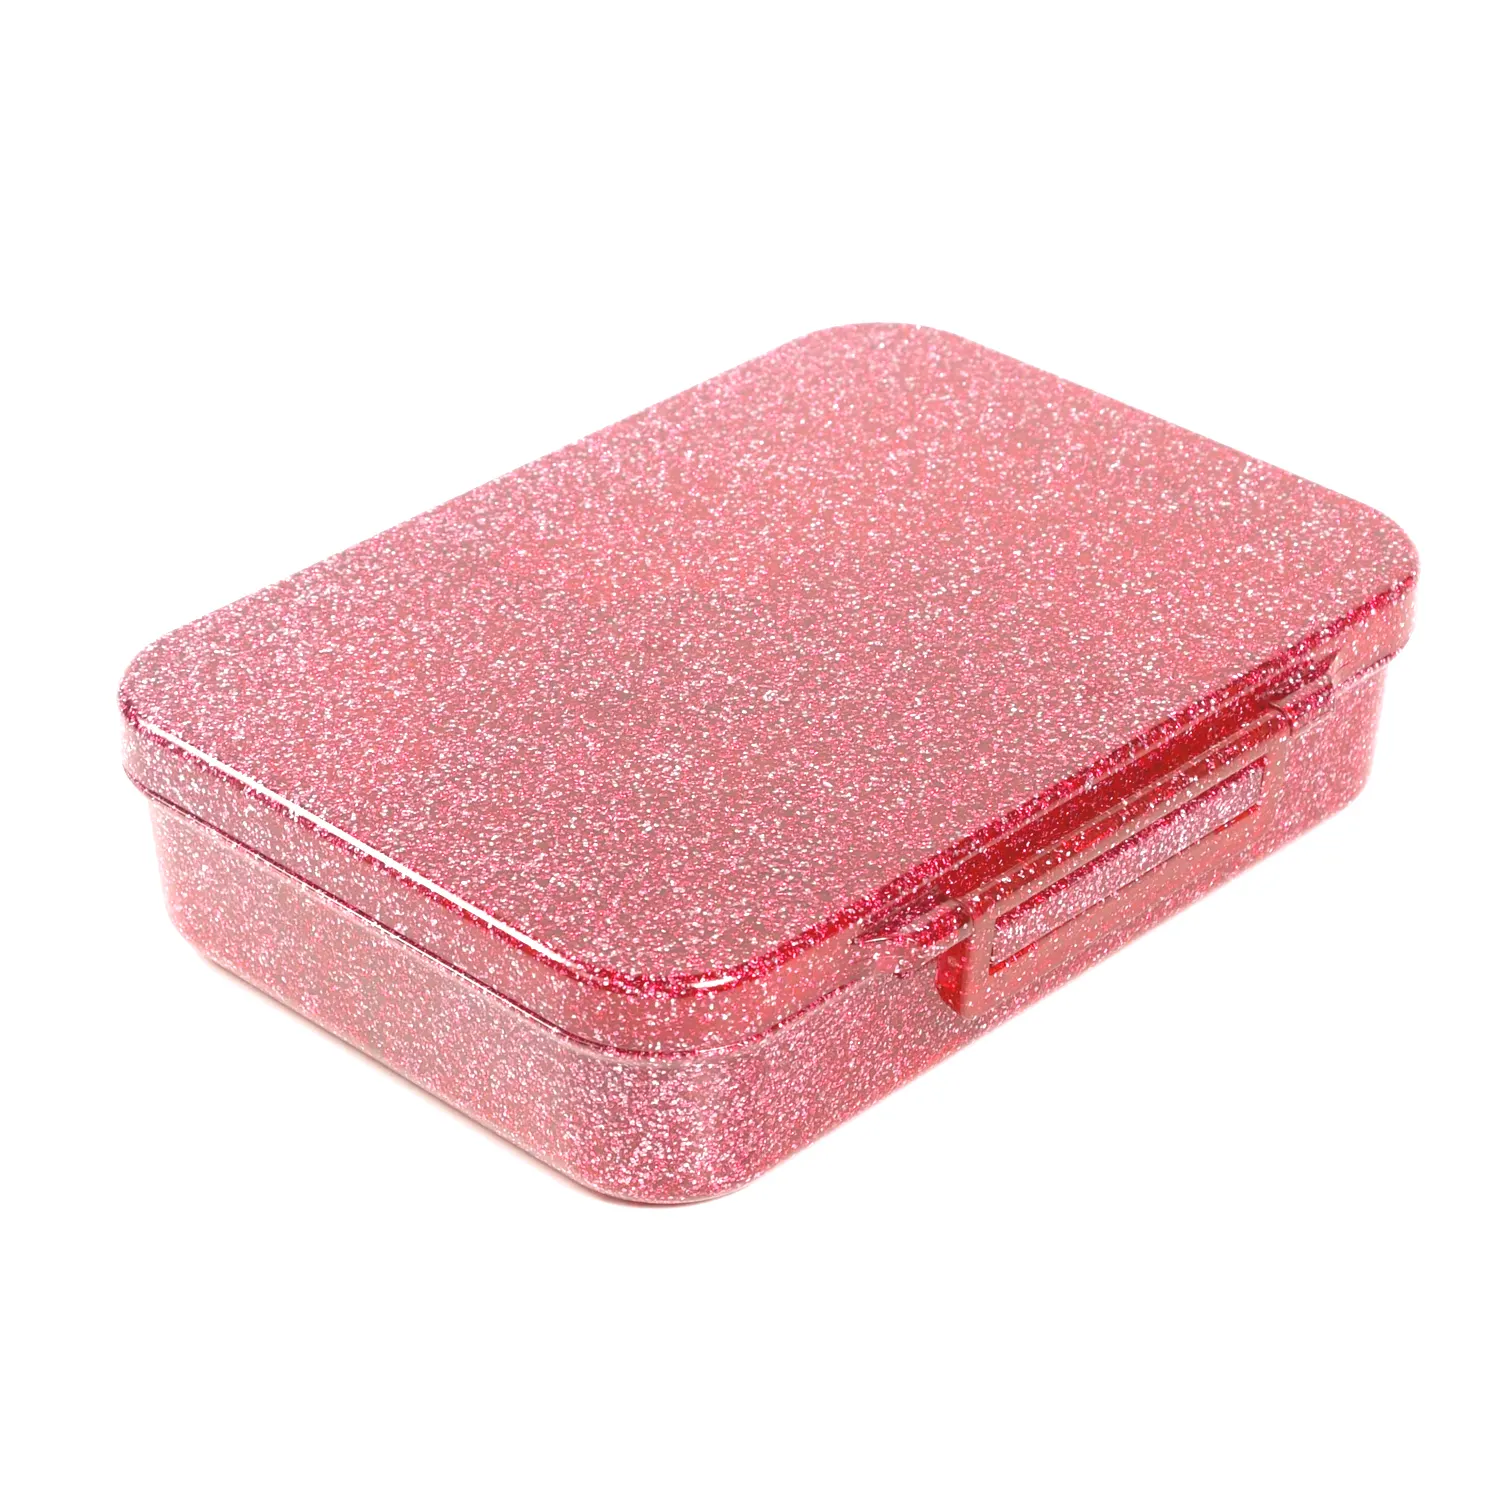 صندوق oumego embase de bentobox lunchcompartiento para salsa en acero inoxida بسعر الجملة صندوق بينطو للأطفال